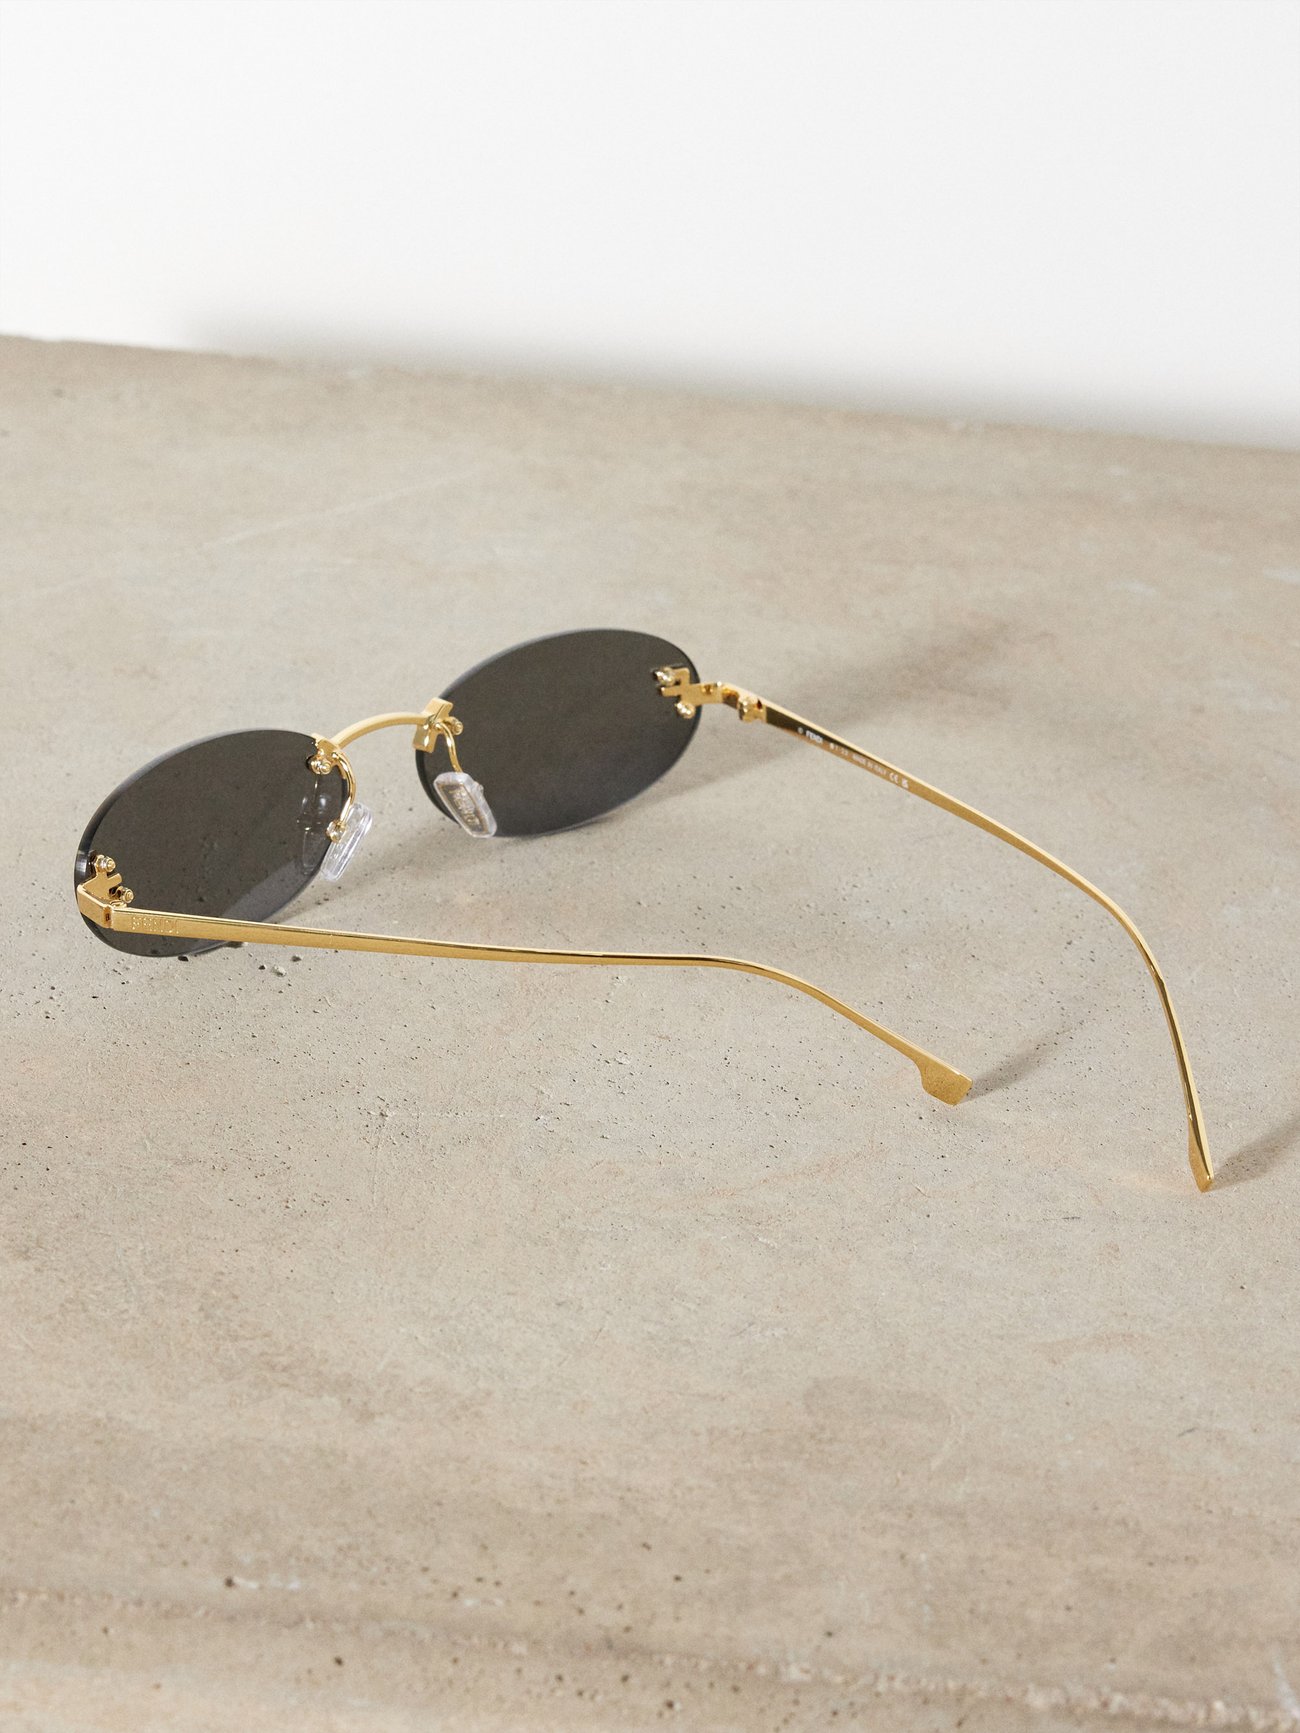 Fendi Travel - Gold-coloured sunglasses